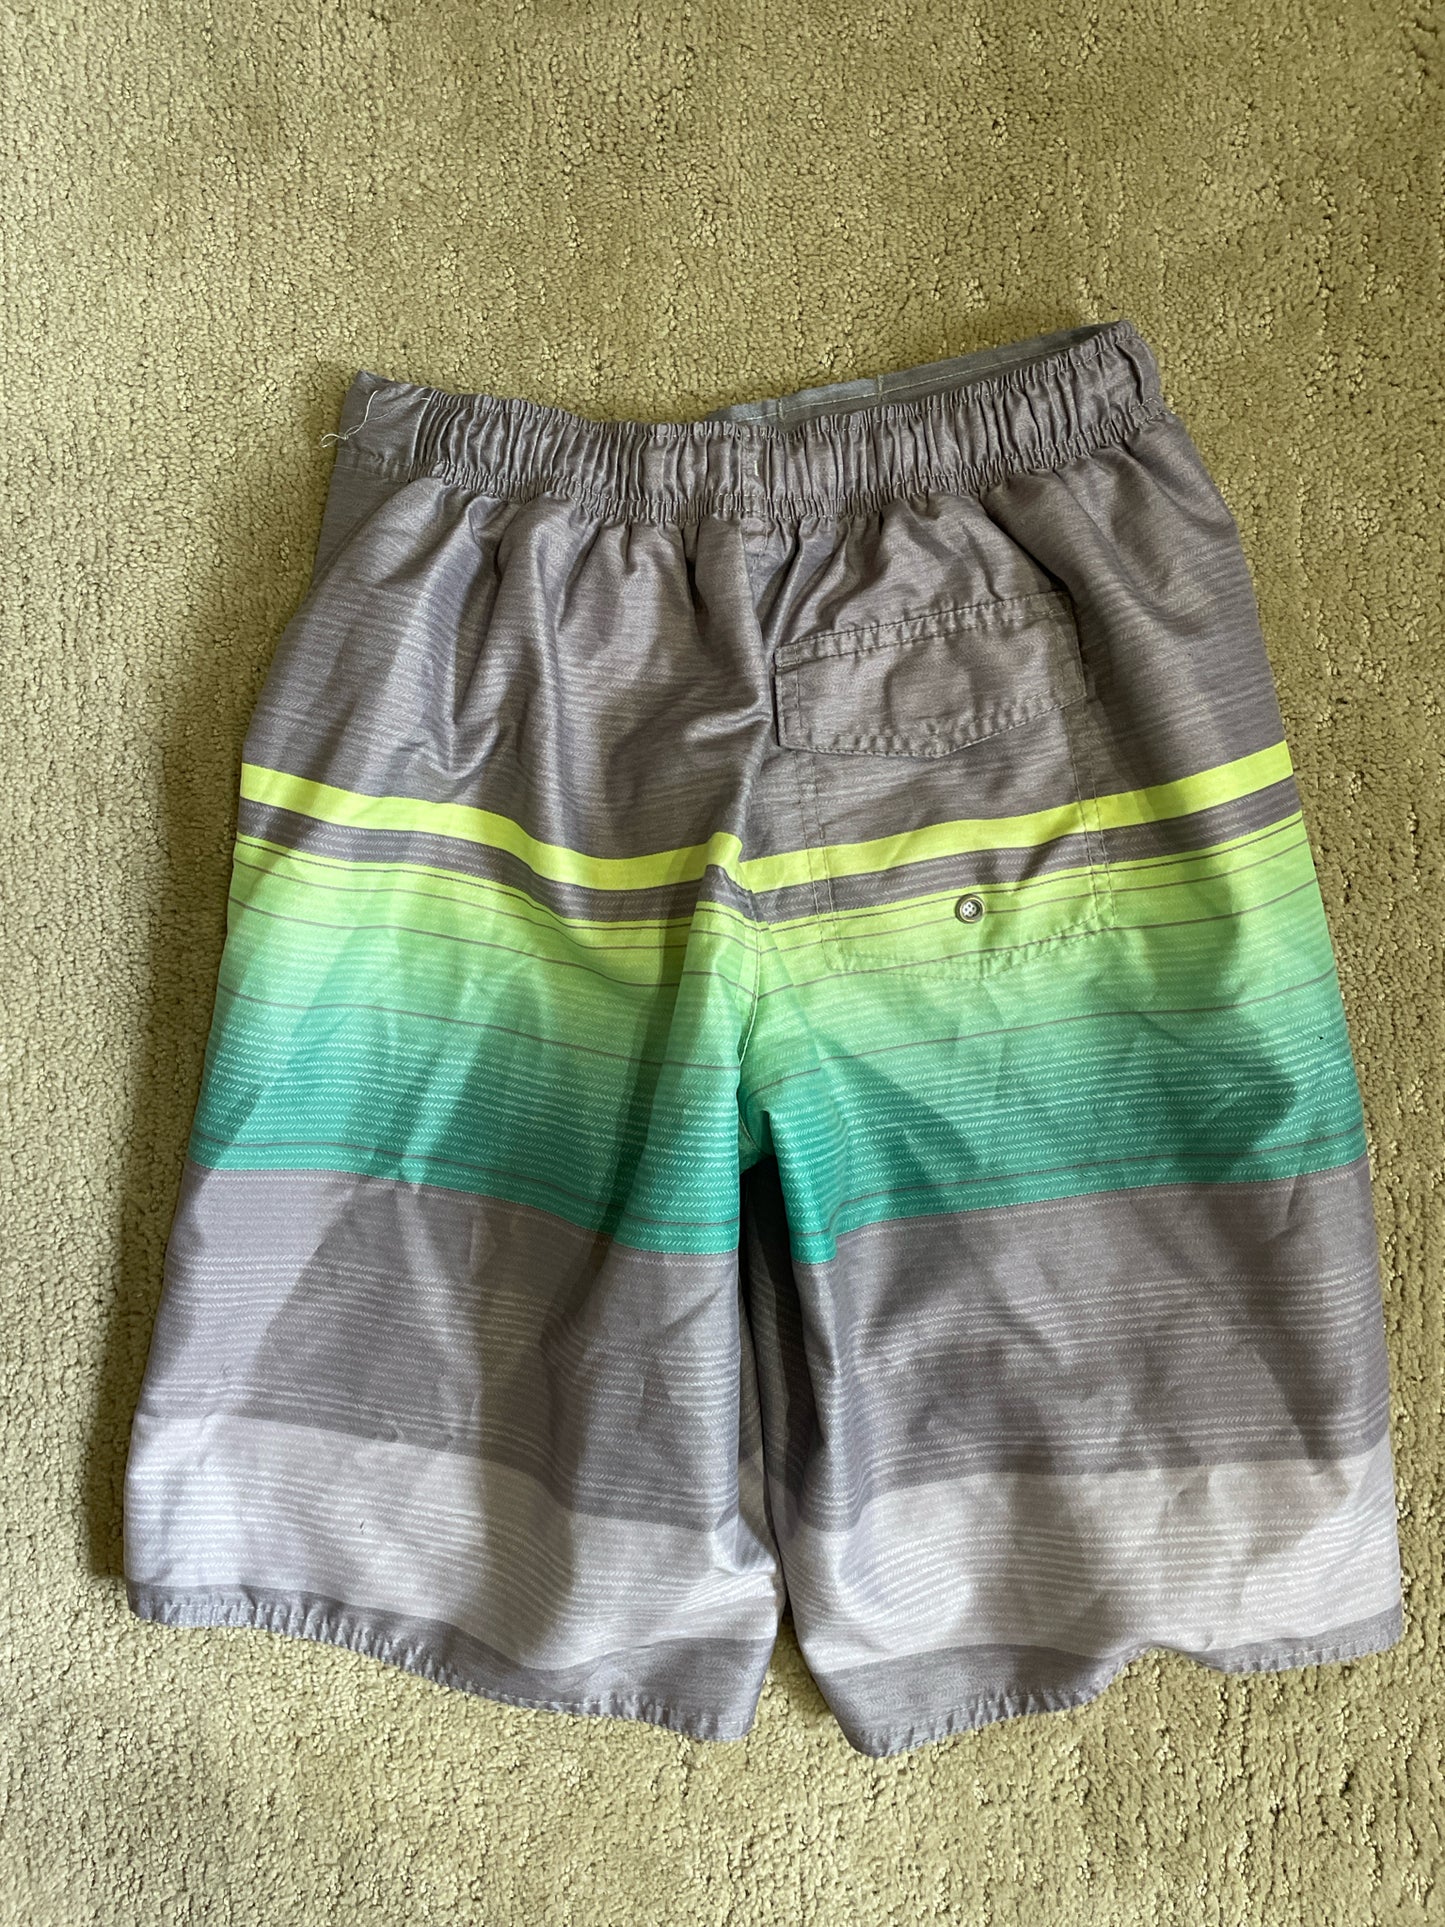 Laguna Board Shorts Boy's 14/16